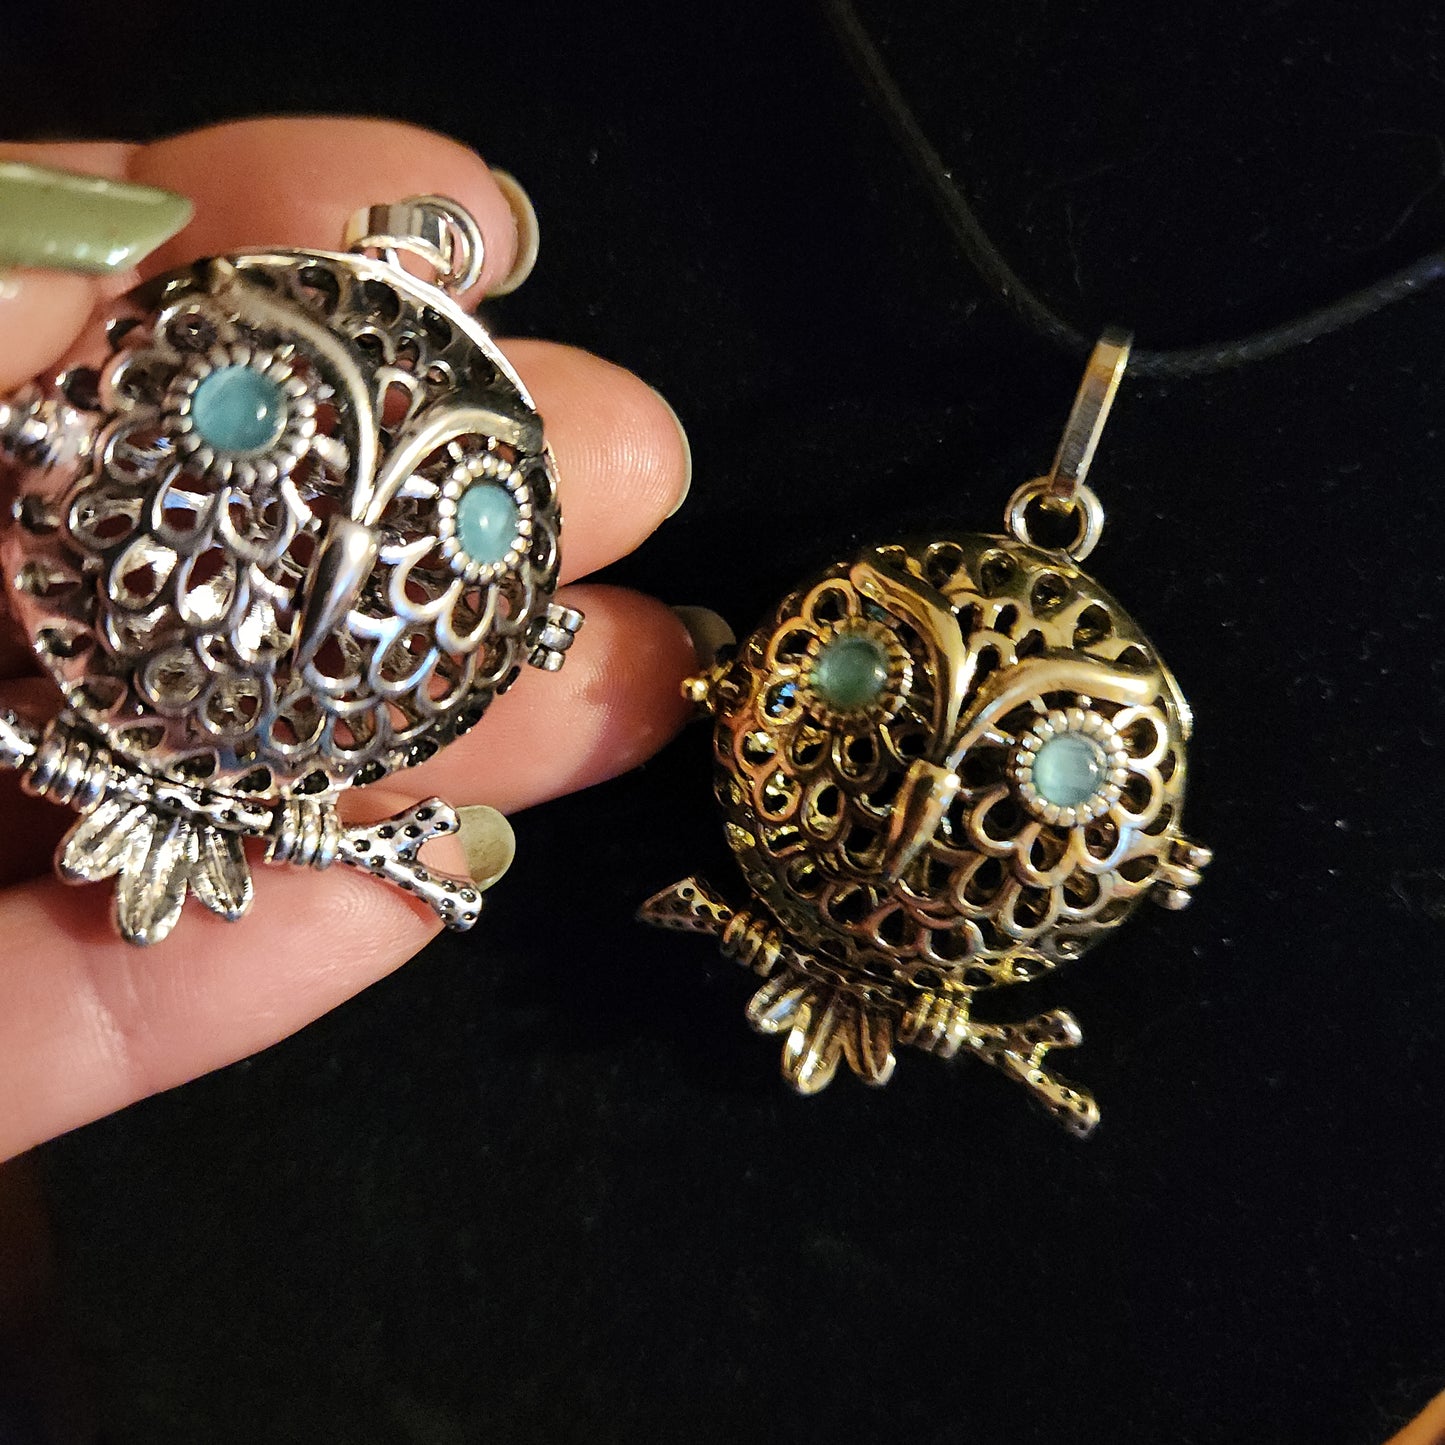 Owl locket/cage necklace